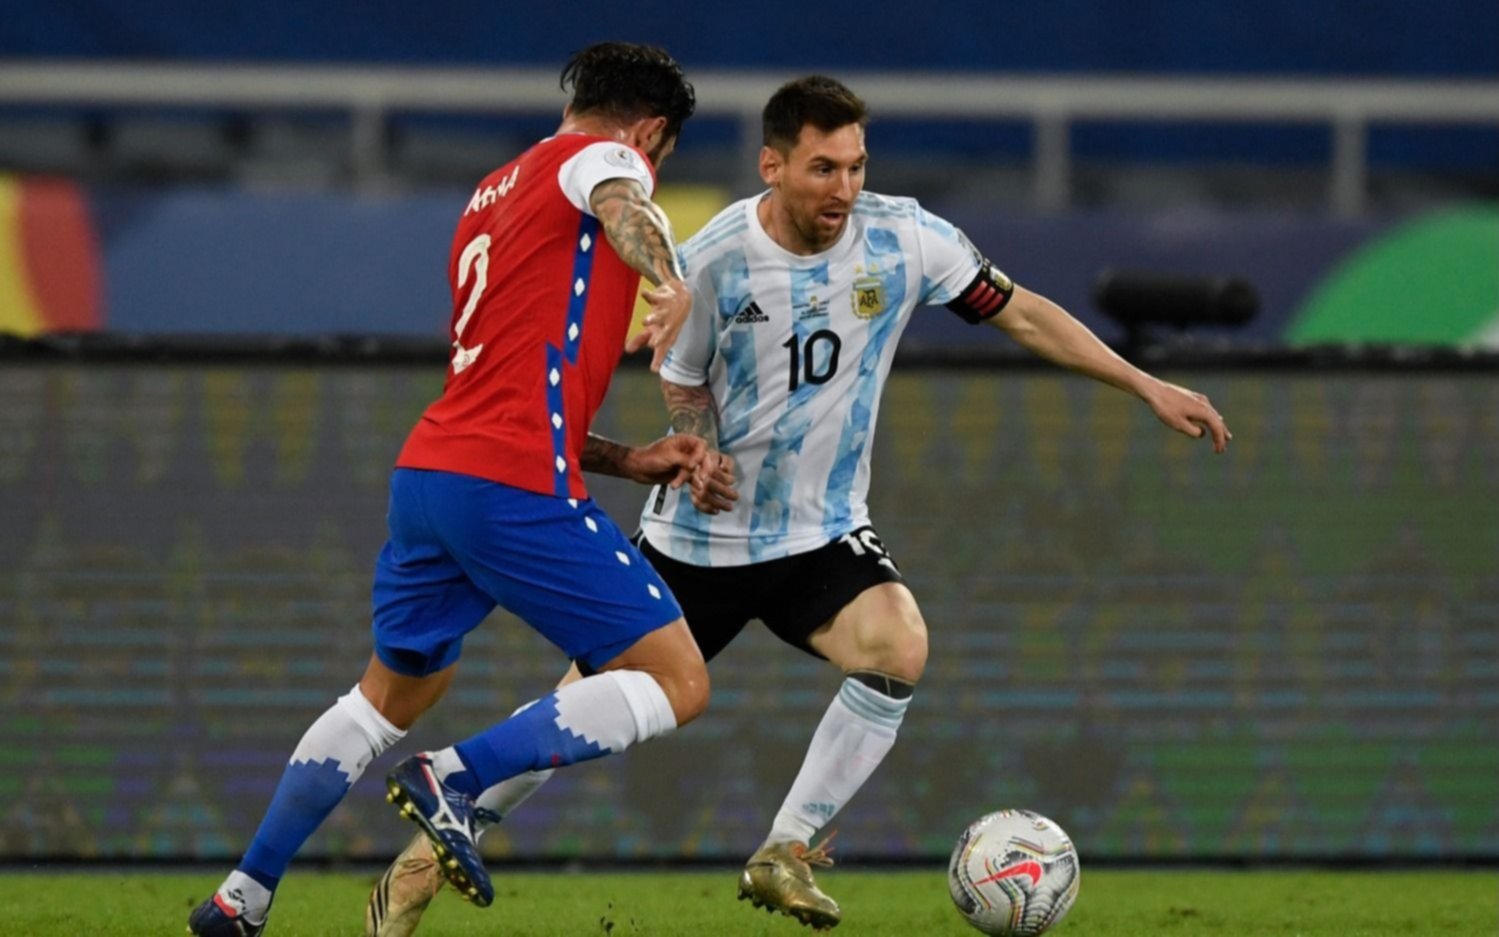 “Nos faltó tranquilidad”, manifestó Lionel Messi, quien anotó un golazo